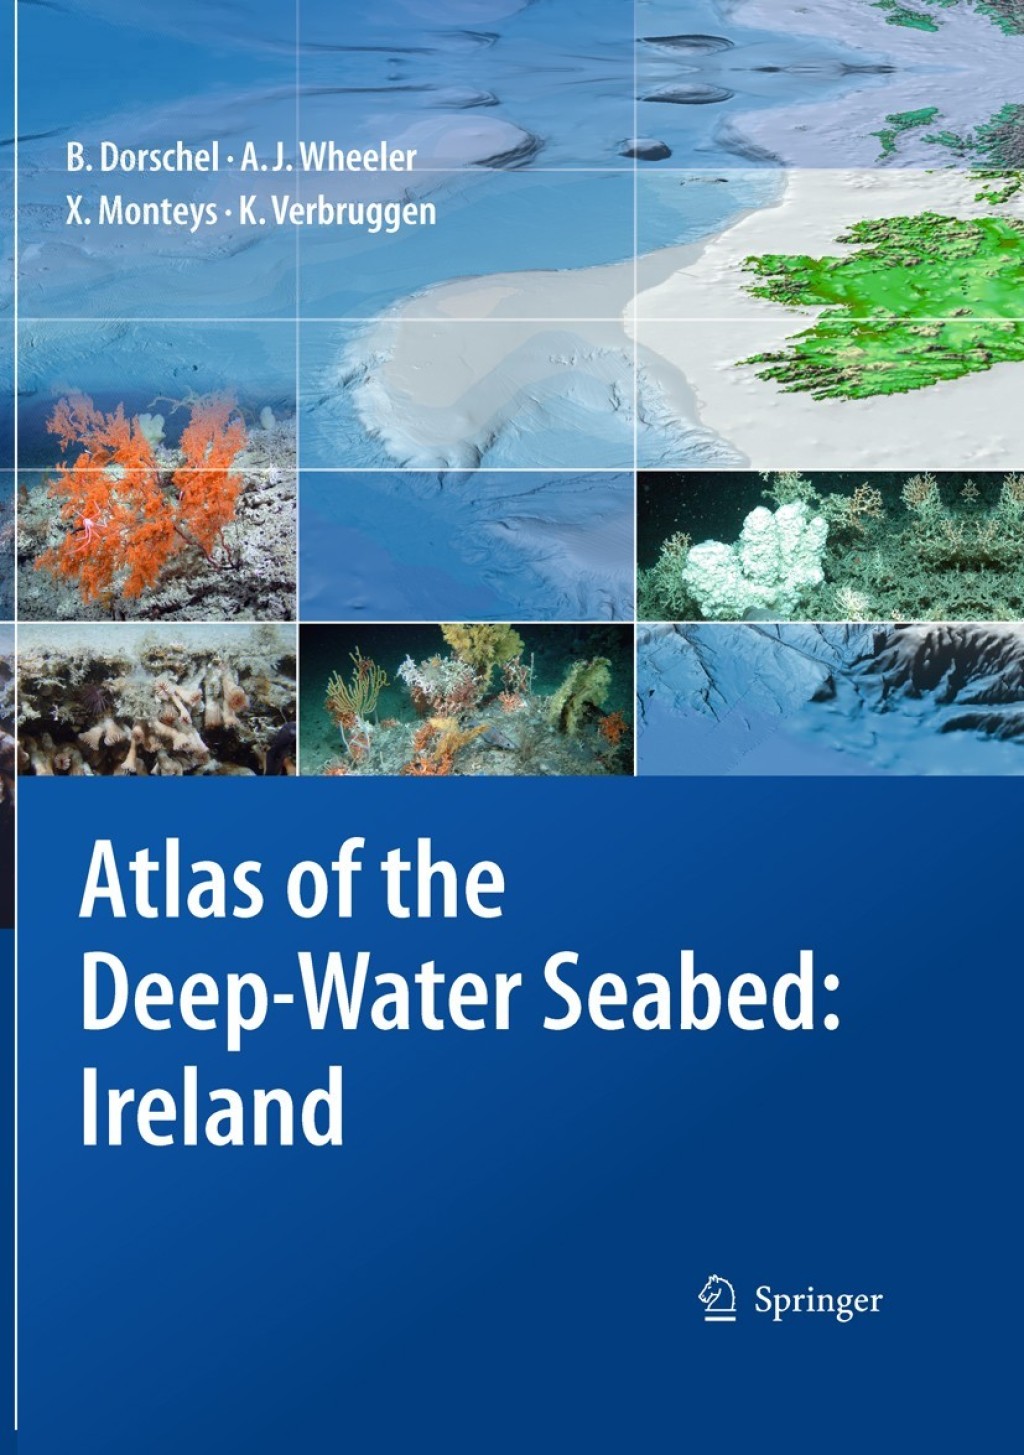 Atlas of the Deep-Water Seabed (eBook) - Boris Dorschel; Andrew J. Wheeler; Xavier Monteys; Koen Verbruggen,